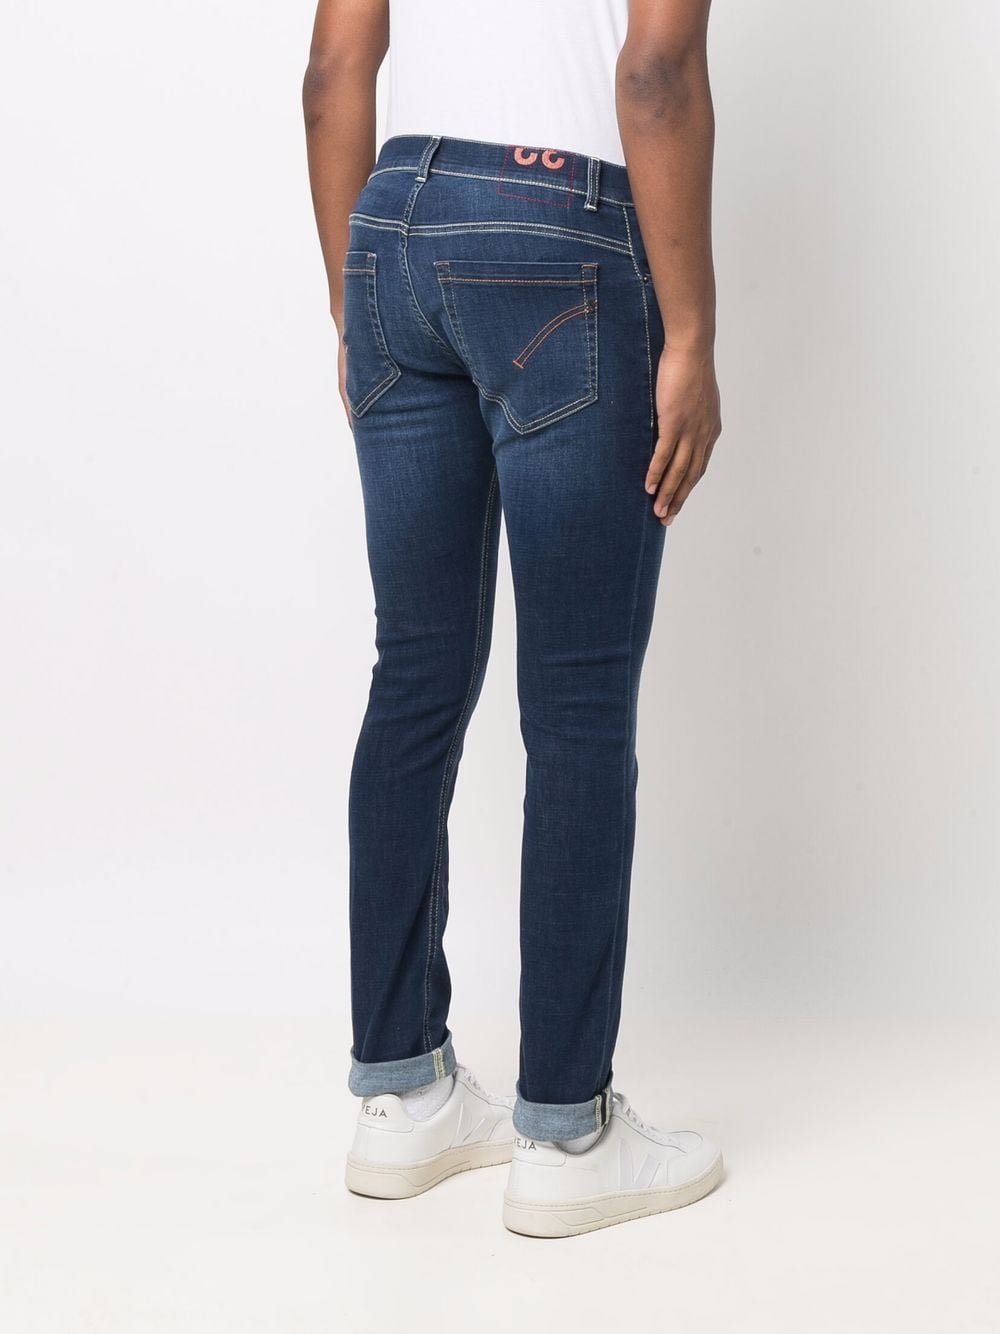 фото Dondup джинсы скинни с заниженной талией